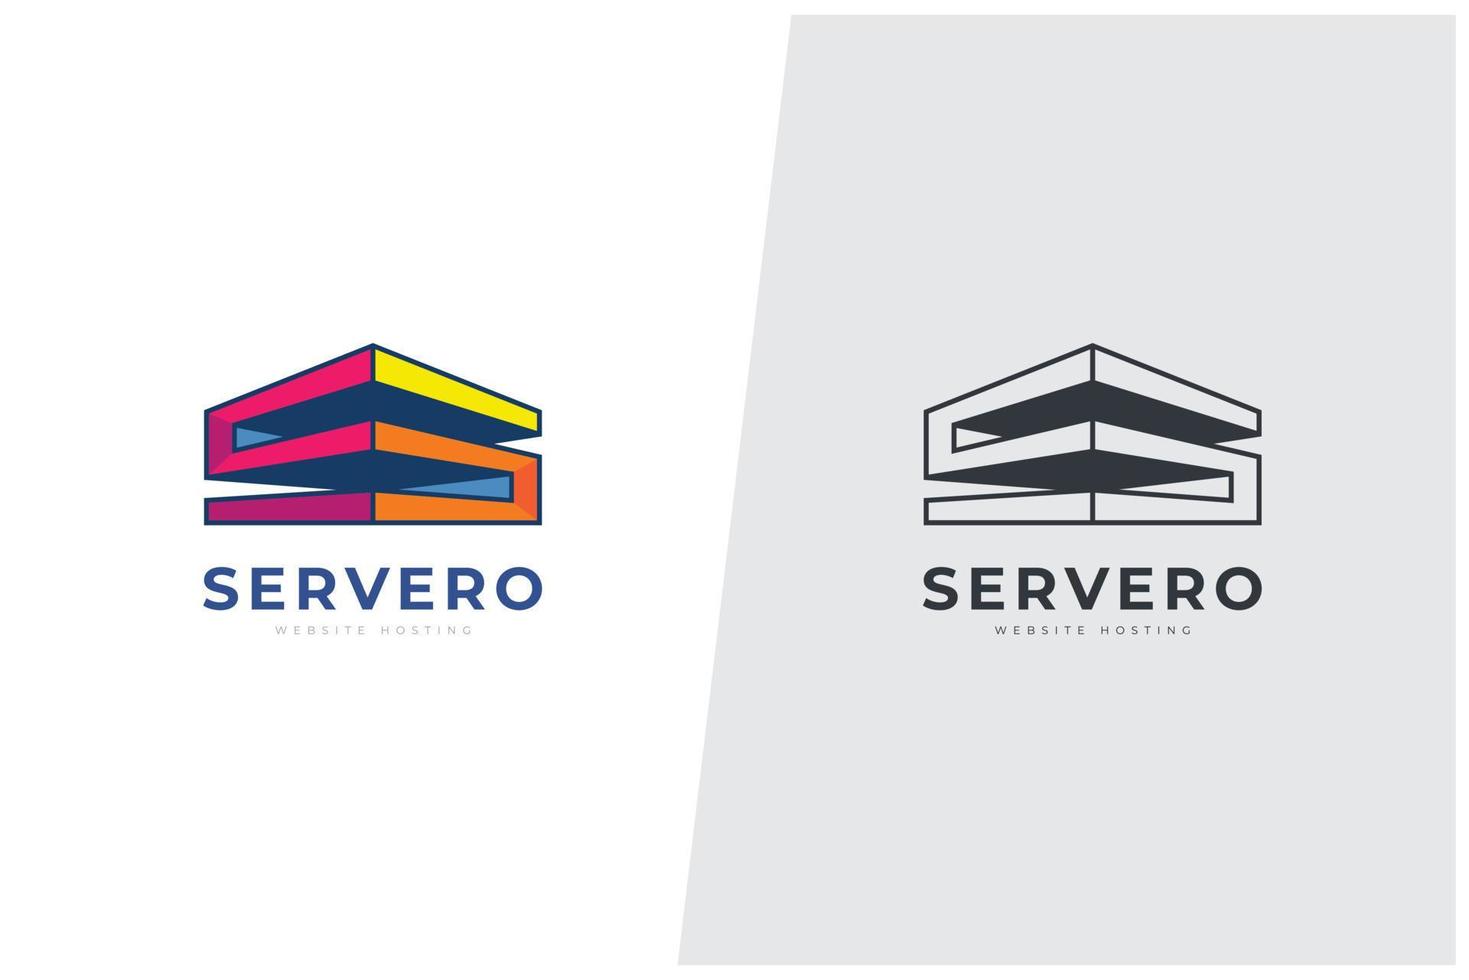 arquitetura de construção de carta de servero e modelo de logotipo de hospedagem na web vetor